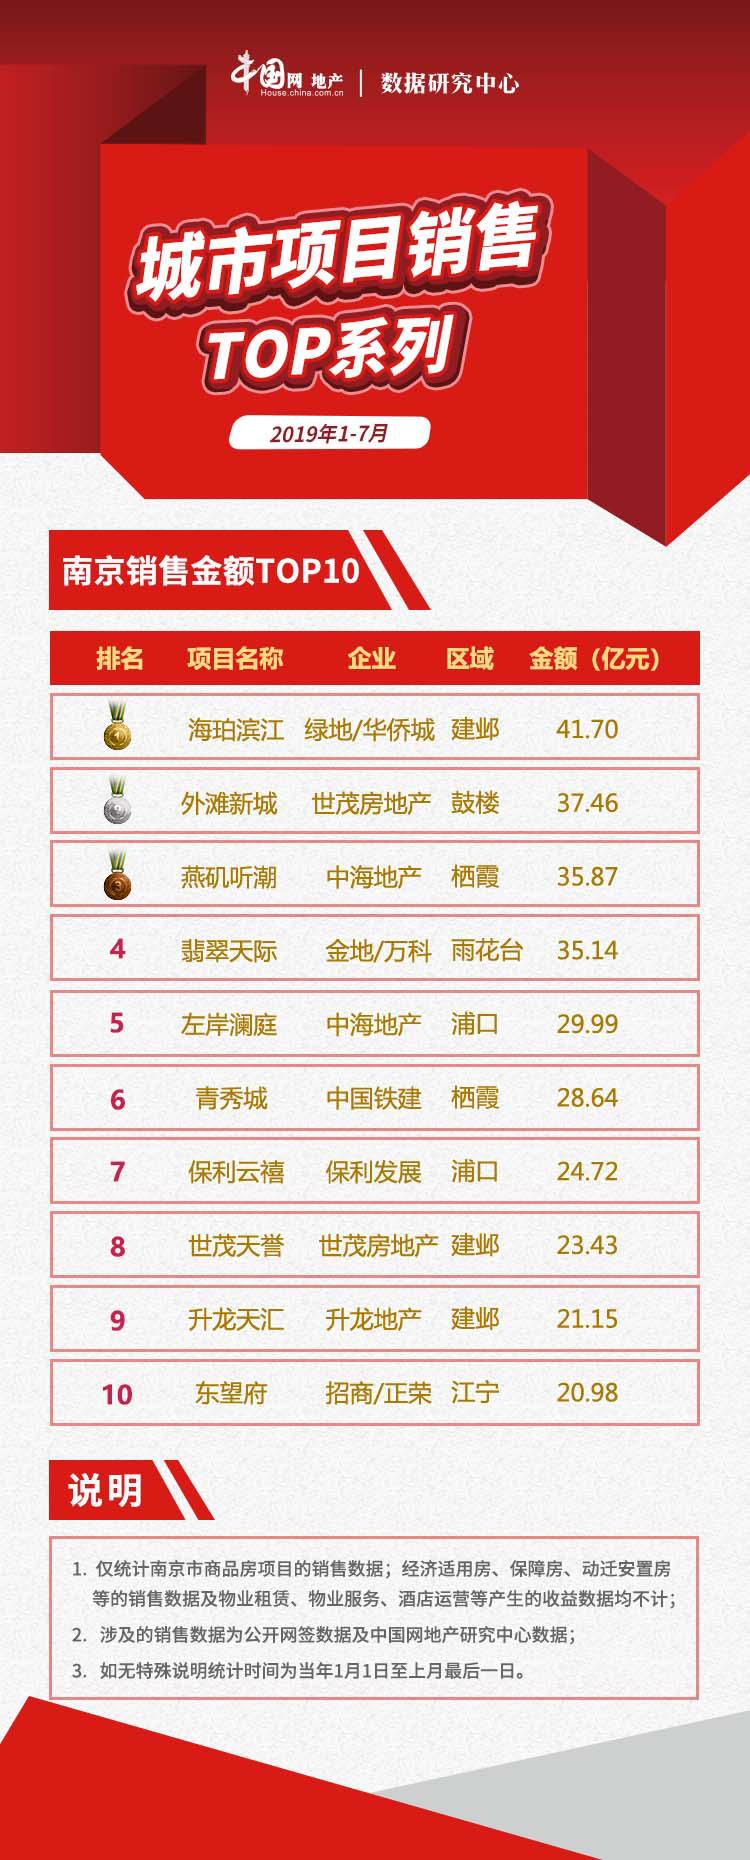 2019年1-7月南京项目销售业绩TOP10推盘热度减退，市场回归理性-中国网地产